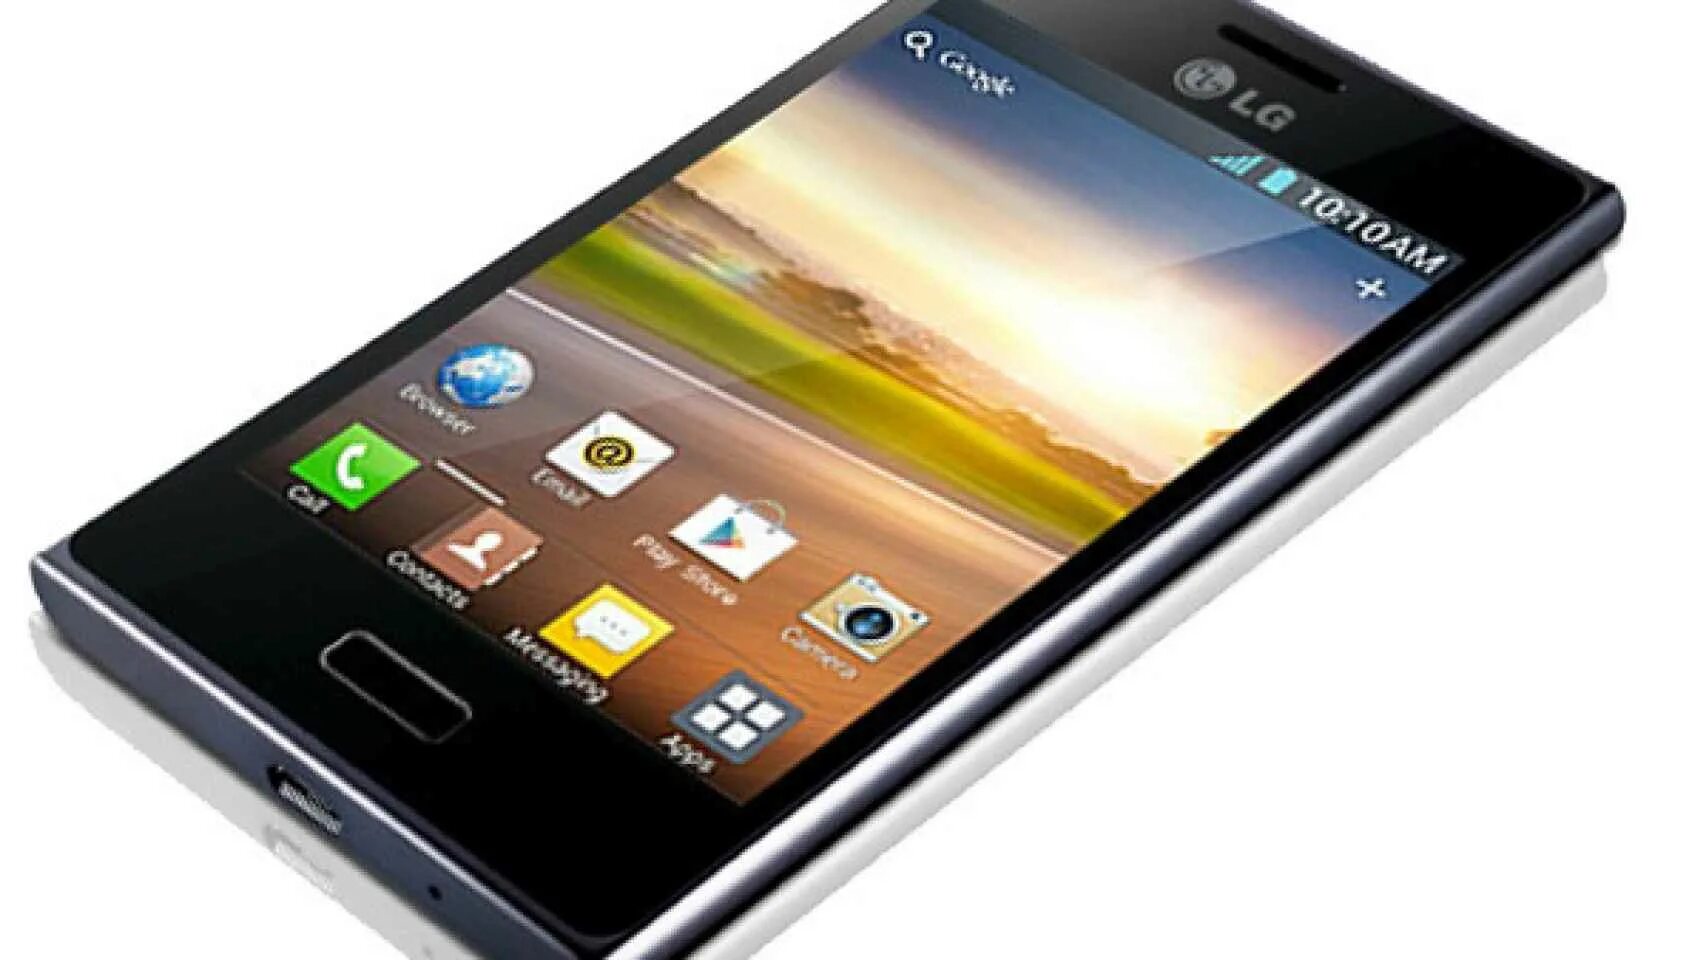 LG Optimus l5. LG Optimus l5 e610. LG Optimus l5 e612. Телефон LG Optimus l5. Телефон цена 3000 рублей